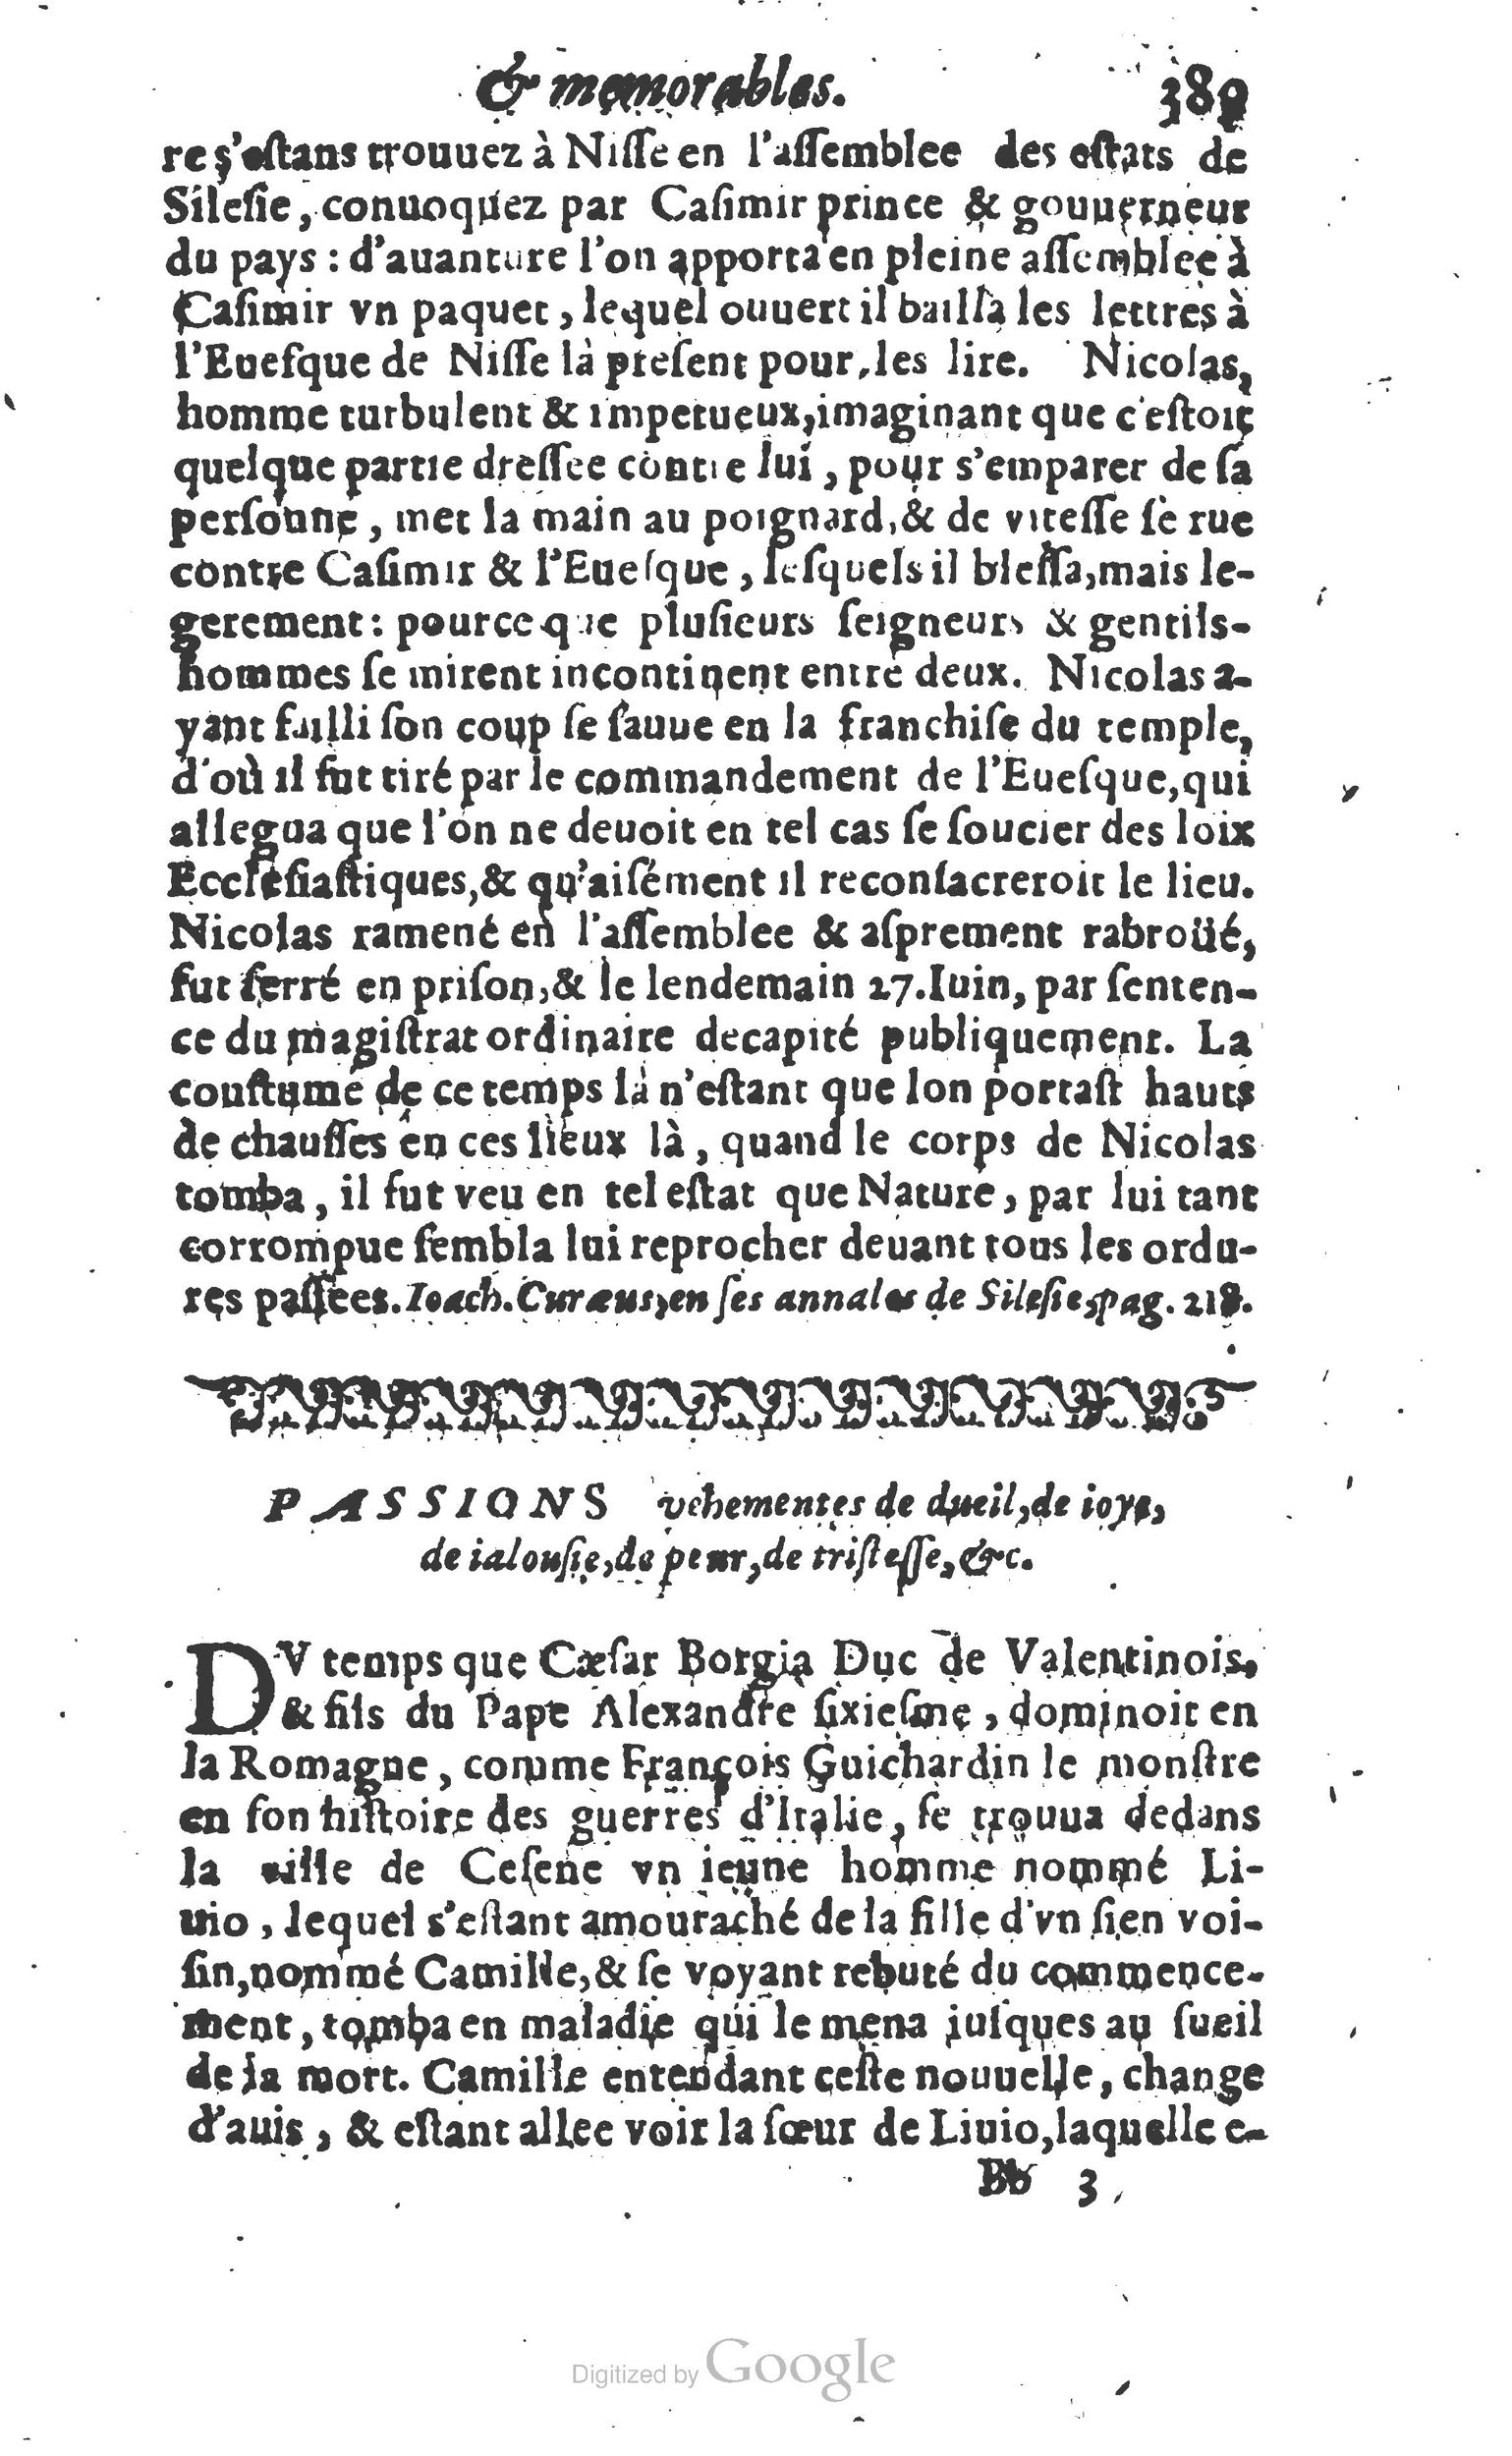 1610 Trésor d’histoires admirables et mémorables de nostre temps Marceau Princeton_Page_0410.jpg